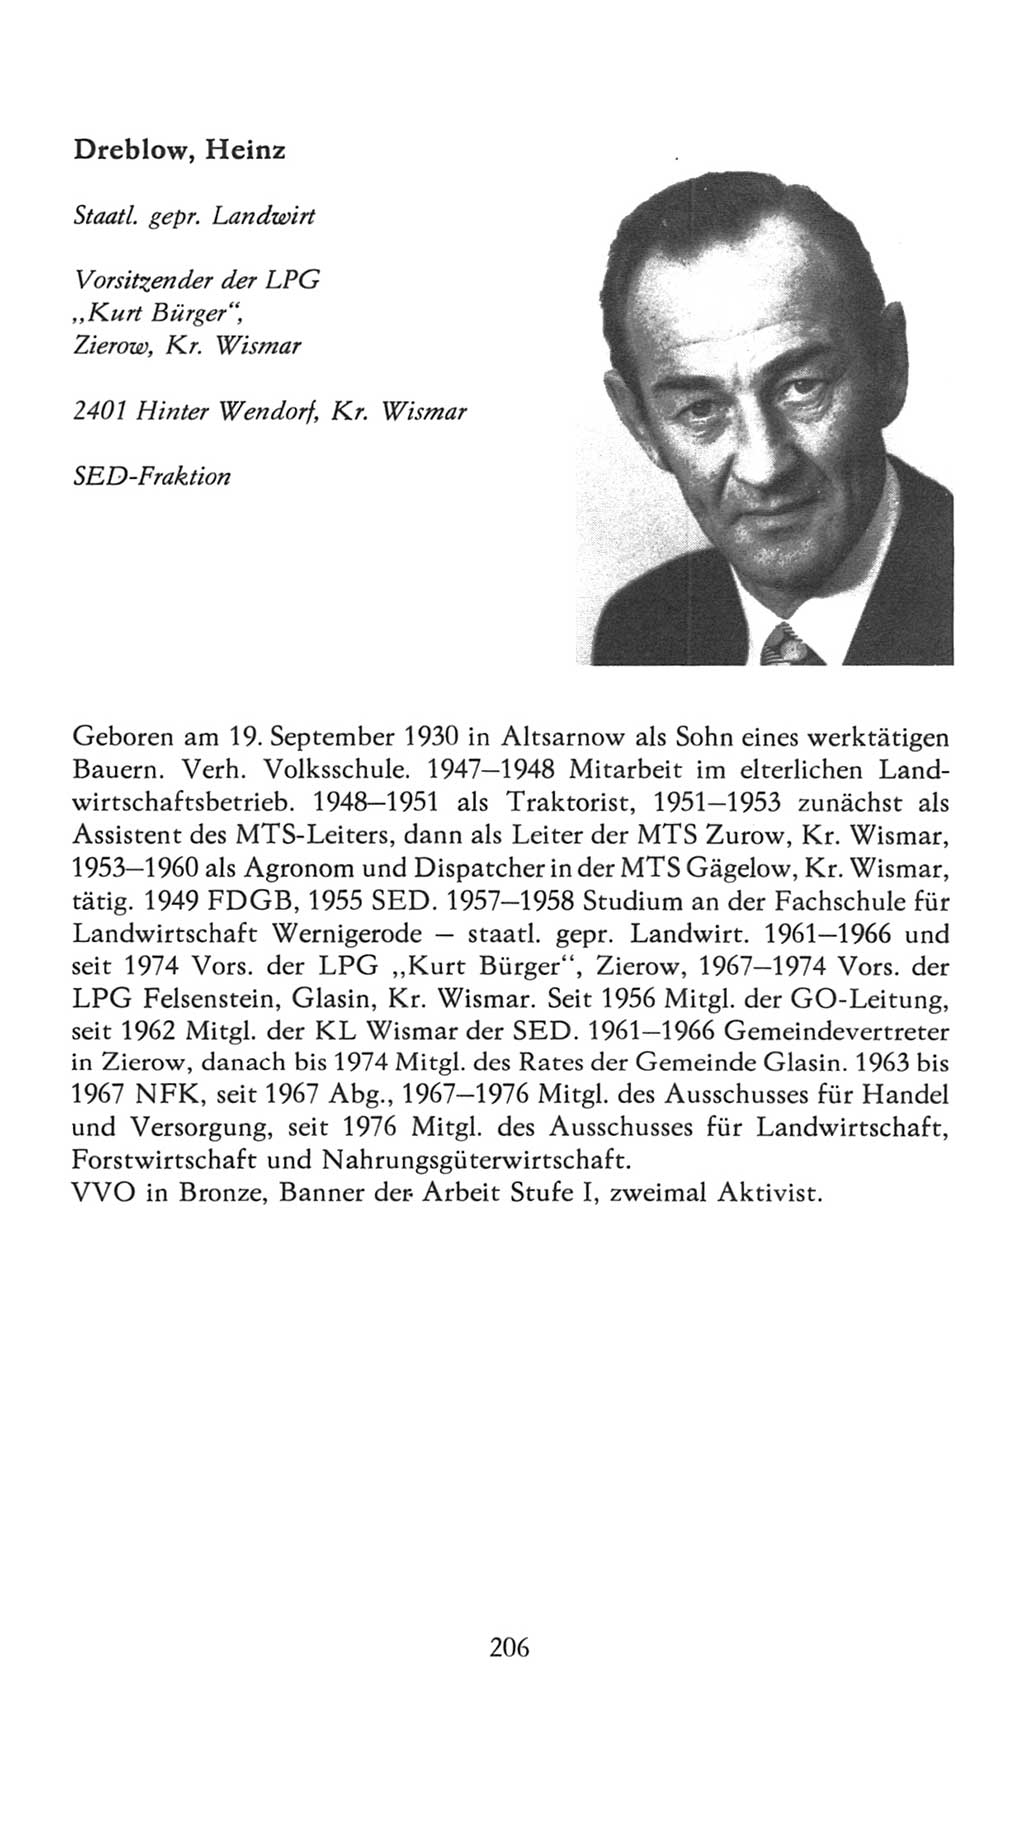 Volkskammer (VK) der Deutschen Demokratischen Republik (DDR), 7. Wahlperiode 1976-1981, Seite 206 (VK. DDR 7. WP. 1976-1981, S. 206)